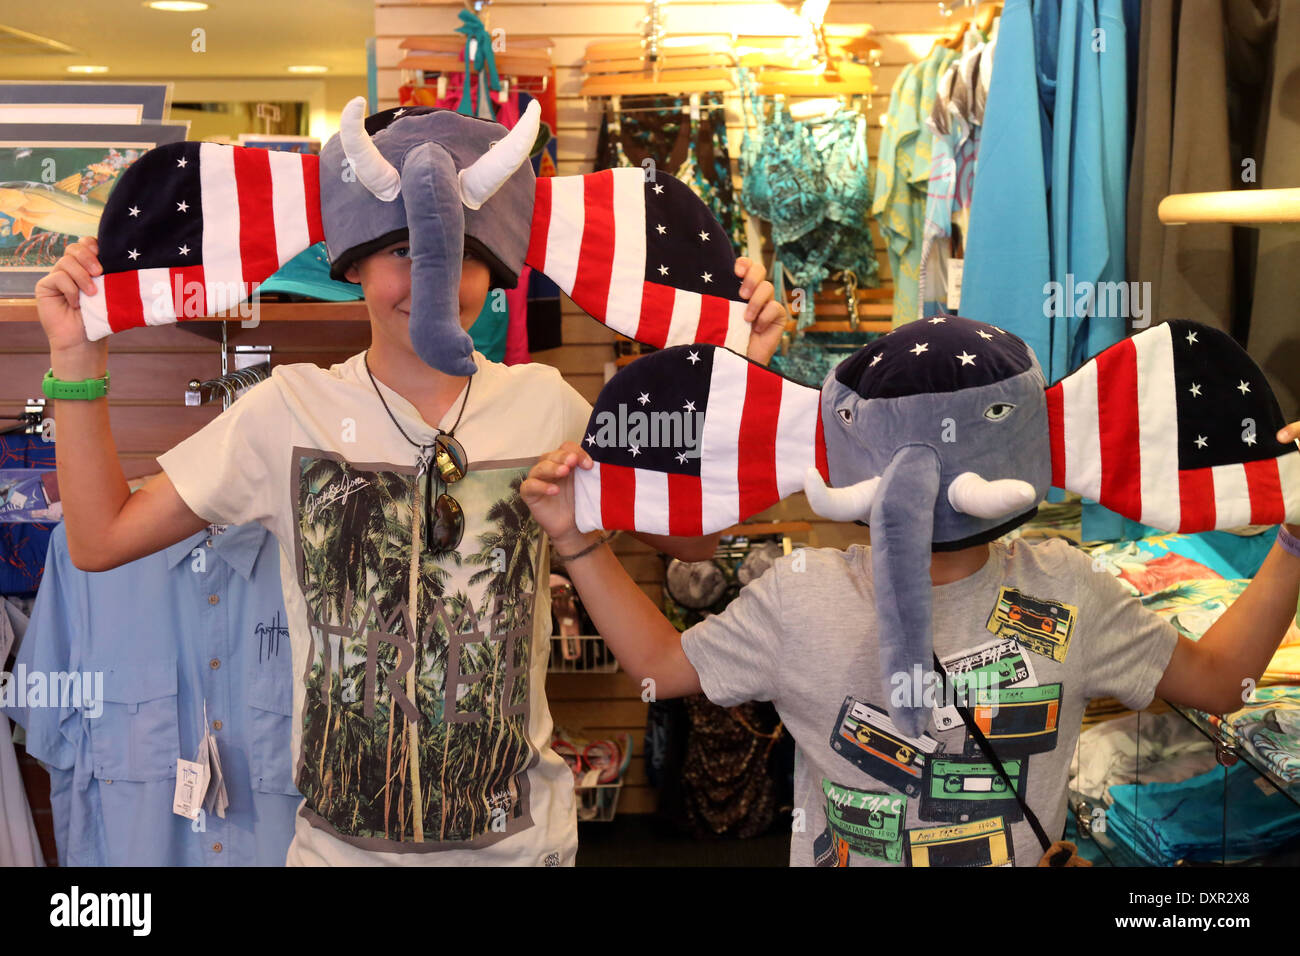 Pasar una rejilla, Estados Unidos de América, los muchachos vistiendo gracioso Huete en forma de elefante Foto de stock